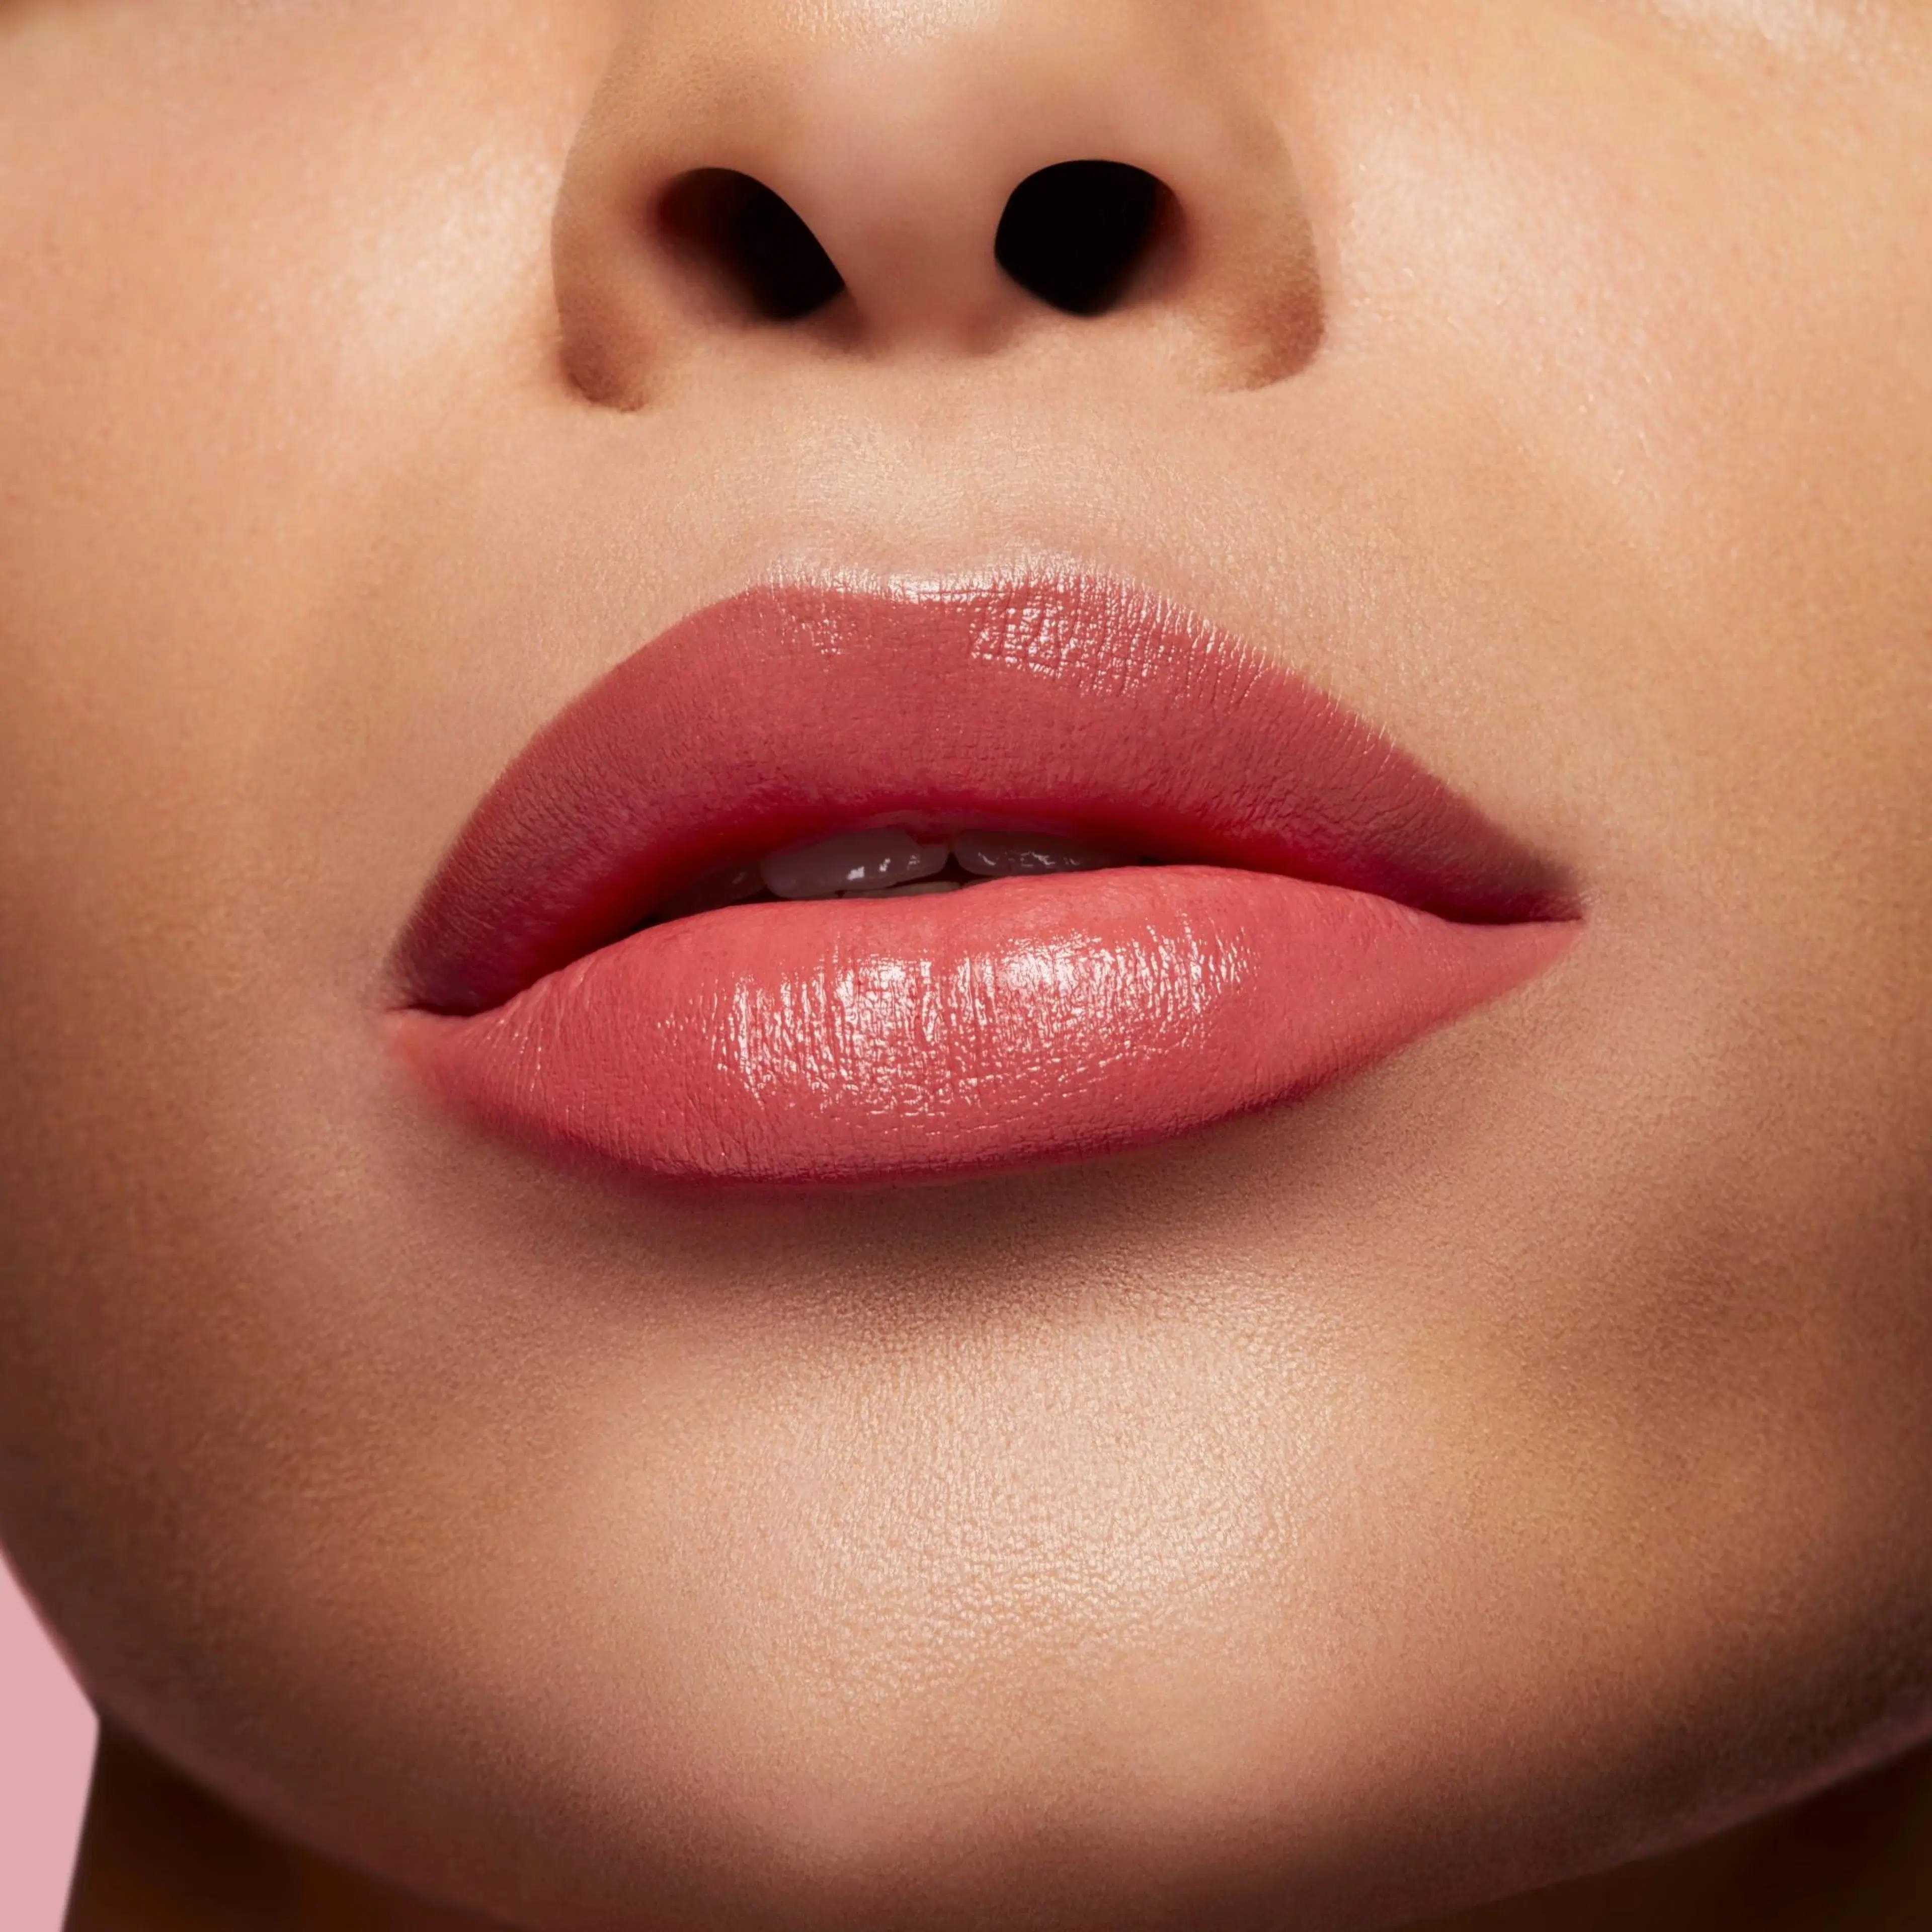 MAC Matte Lipstick huulipuna 3 g